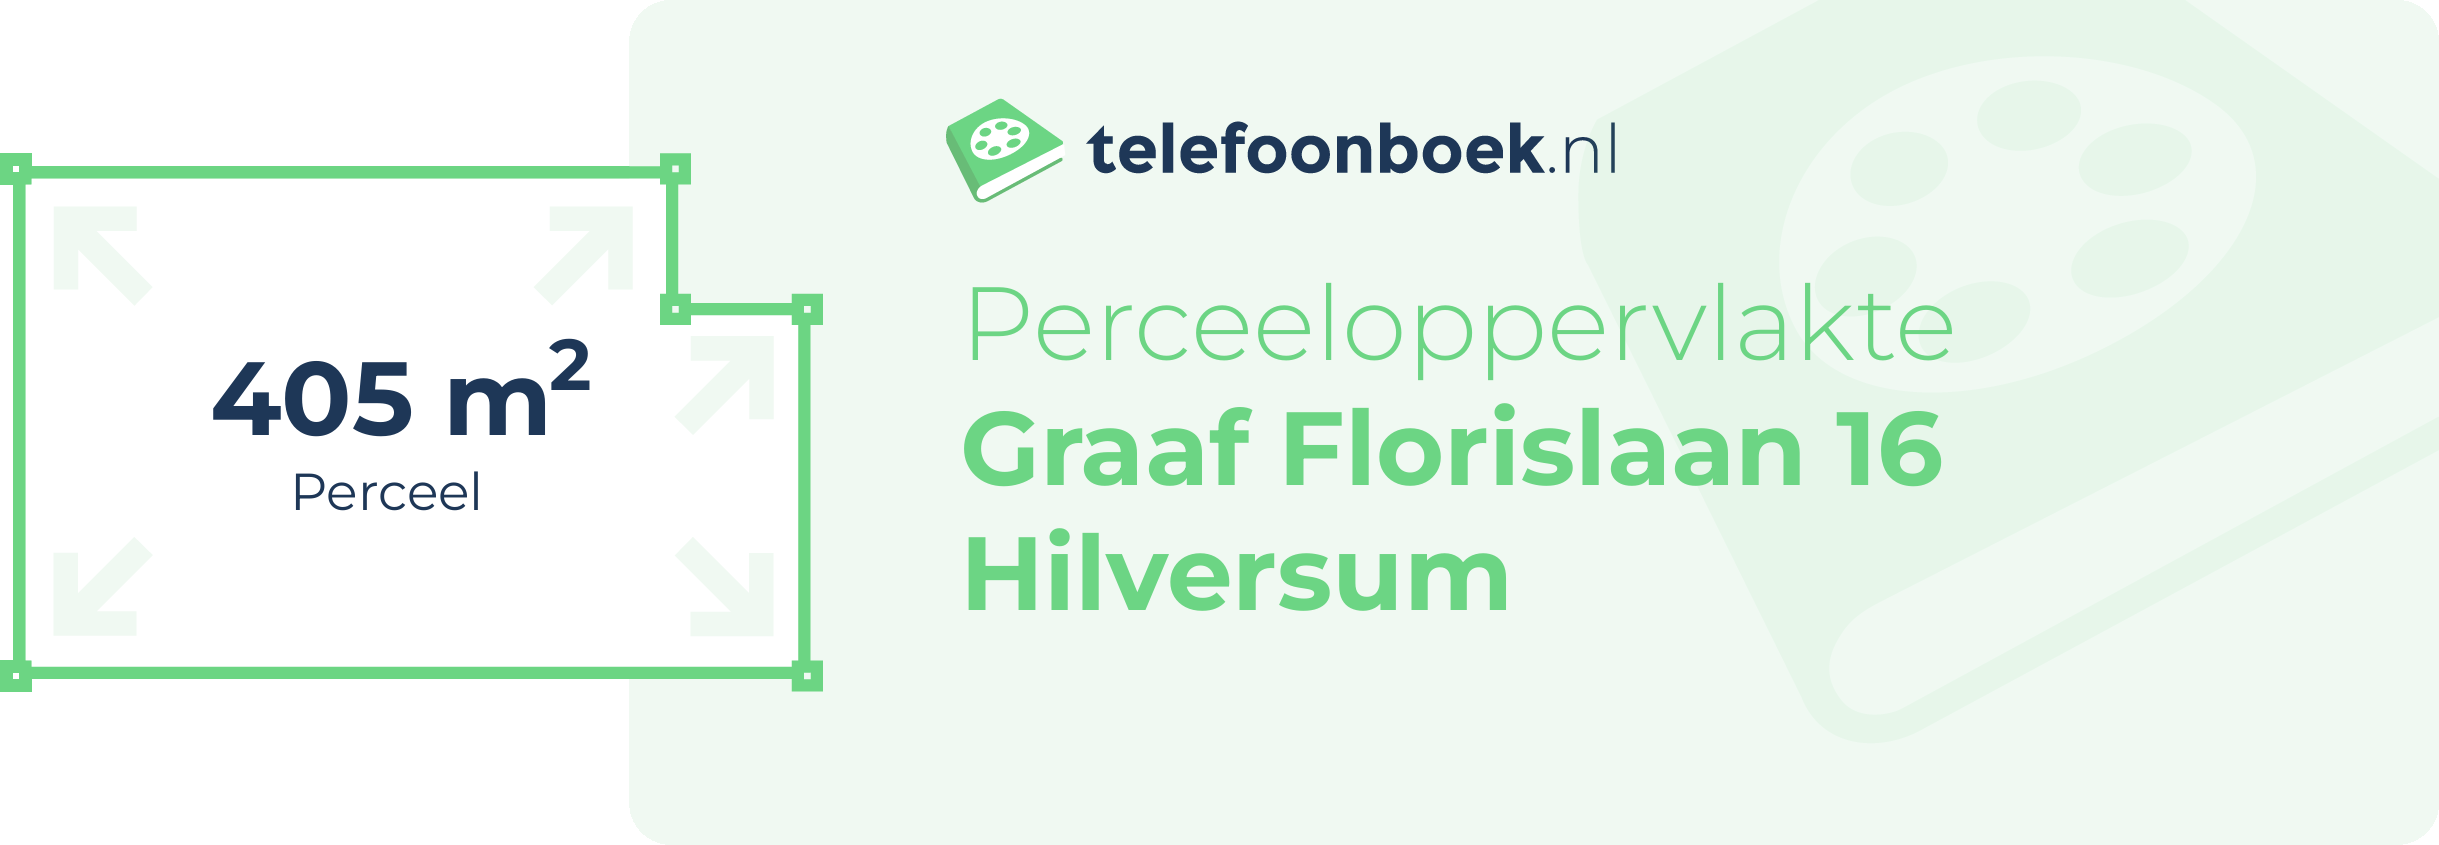 Perceeloppervlakte Graaf Florislaan 16 Hilversum